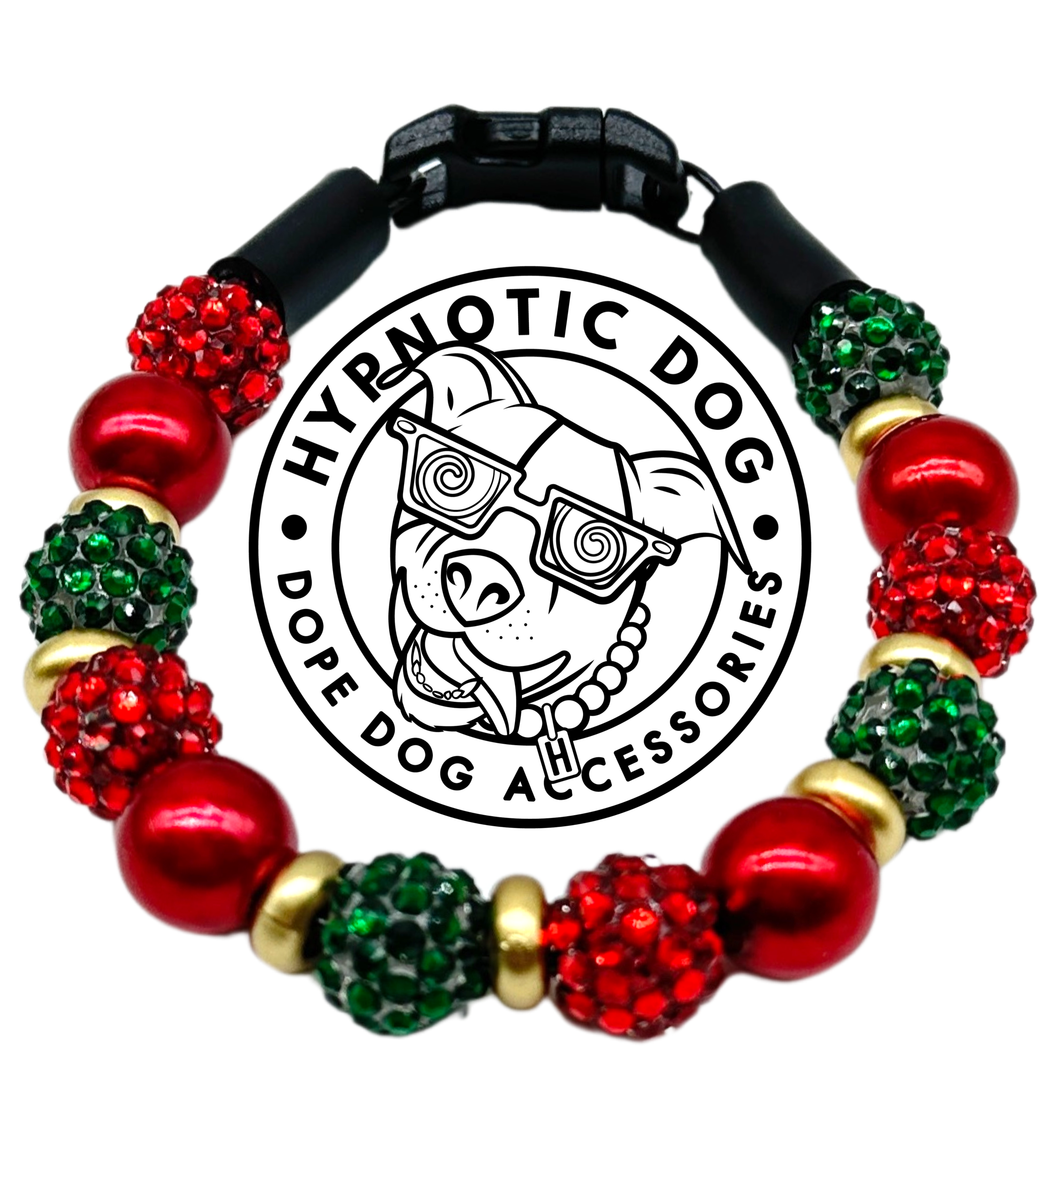 Jingle Bell Rock MINI Glam Collar [Small Dog/Cat Bead Collar]